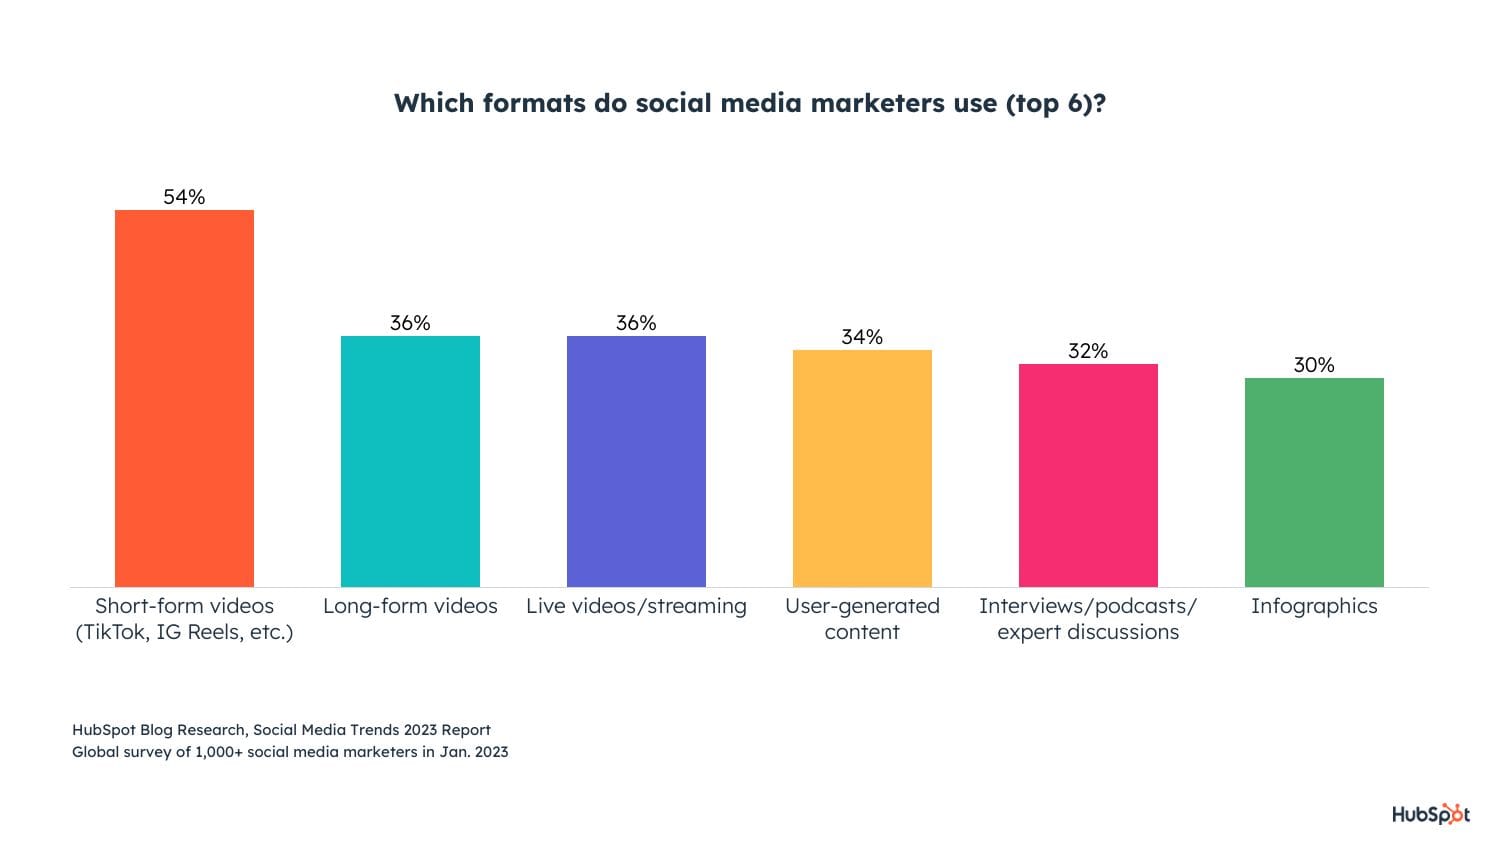 Popular Social Media Formats